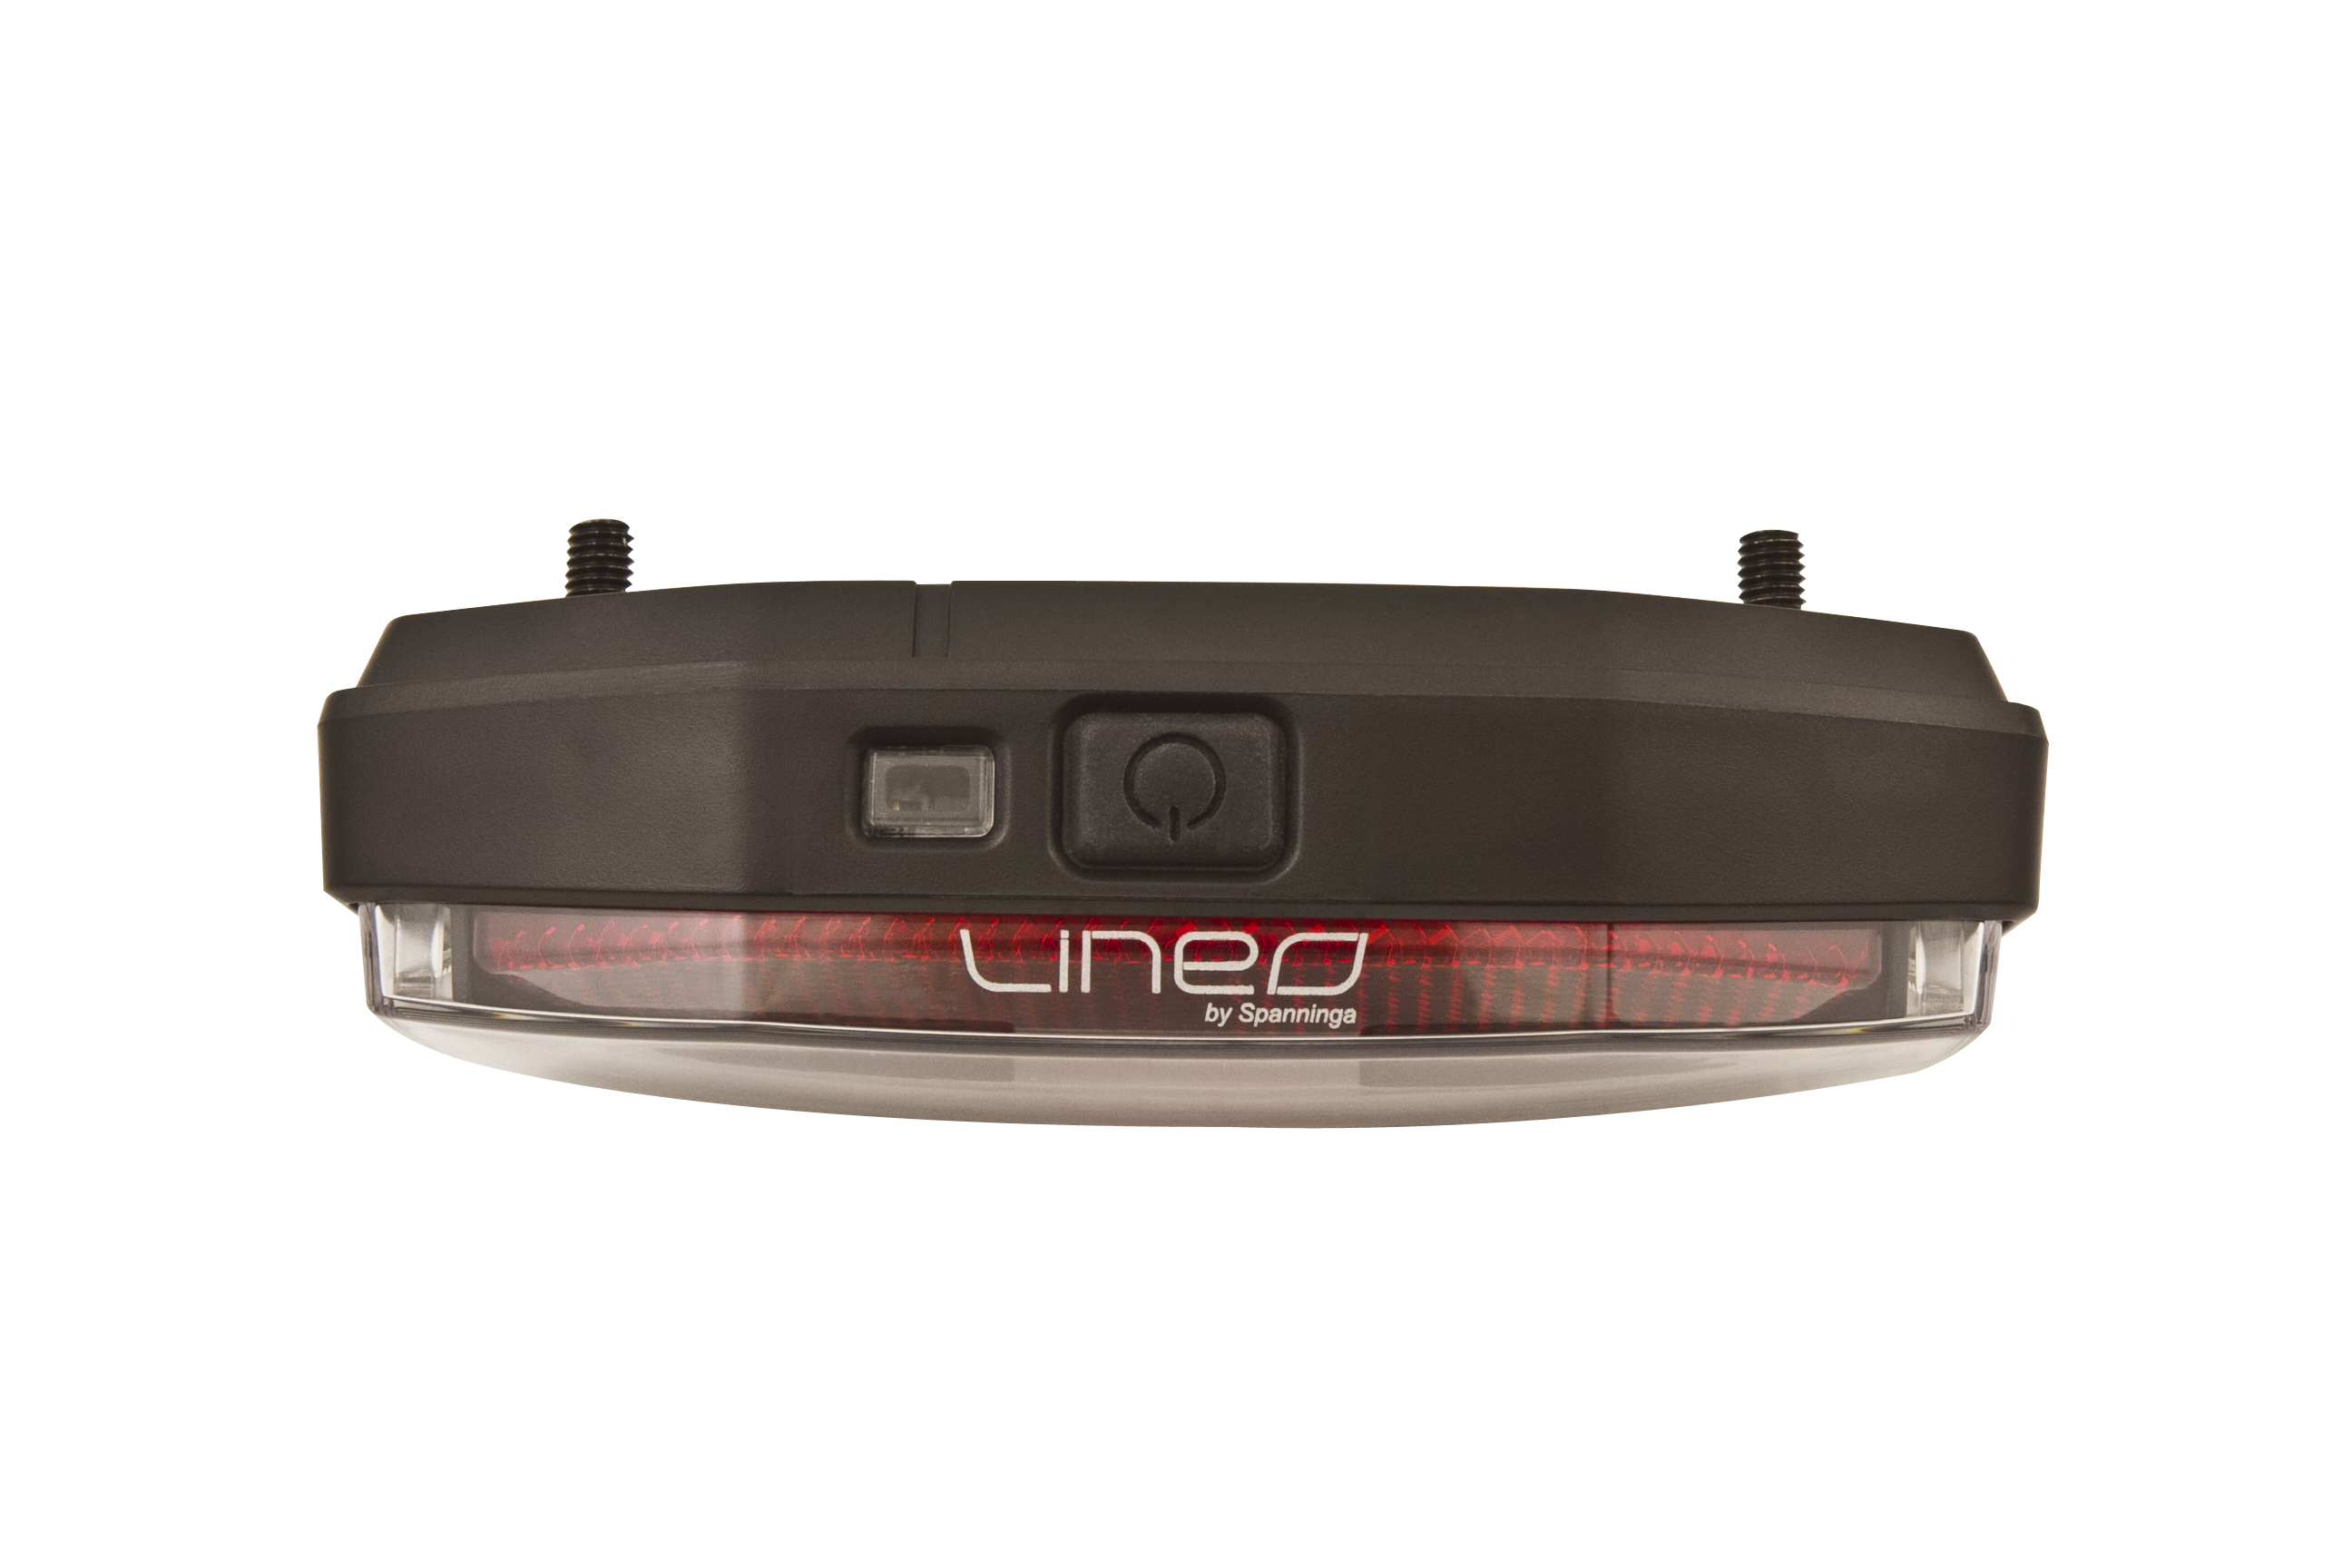 SPANNINGA Batterie-LED-Gepäckträgerrücklicht "Lineo Xba" mit Einschaltautomatik